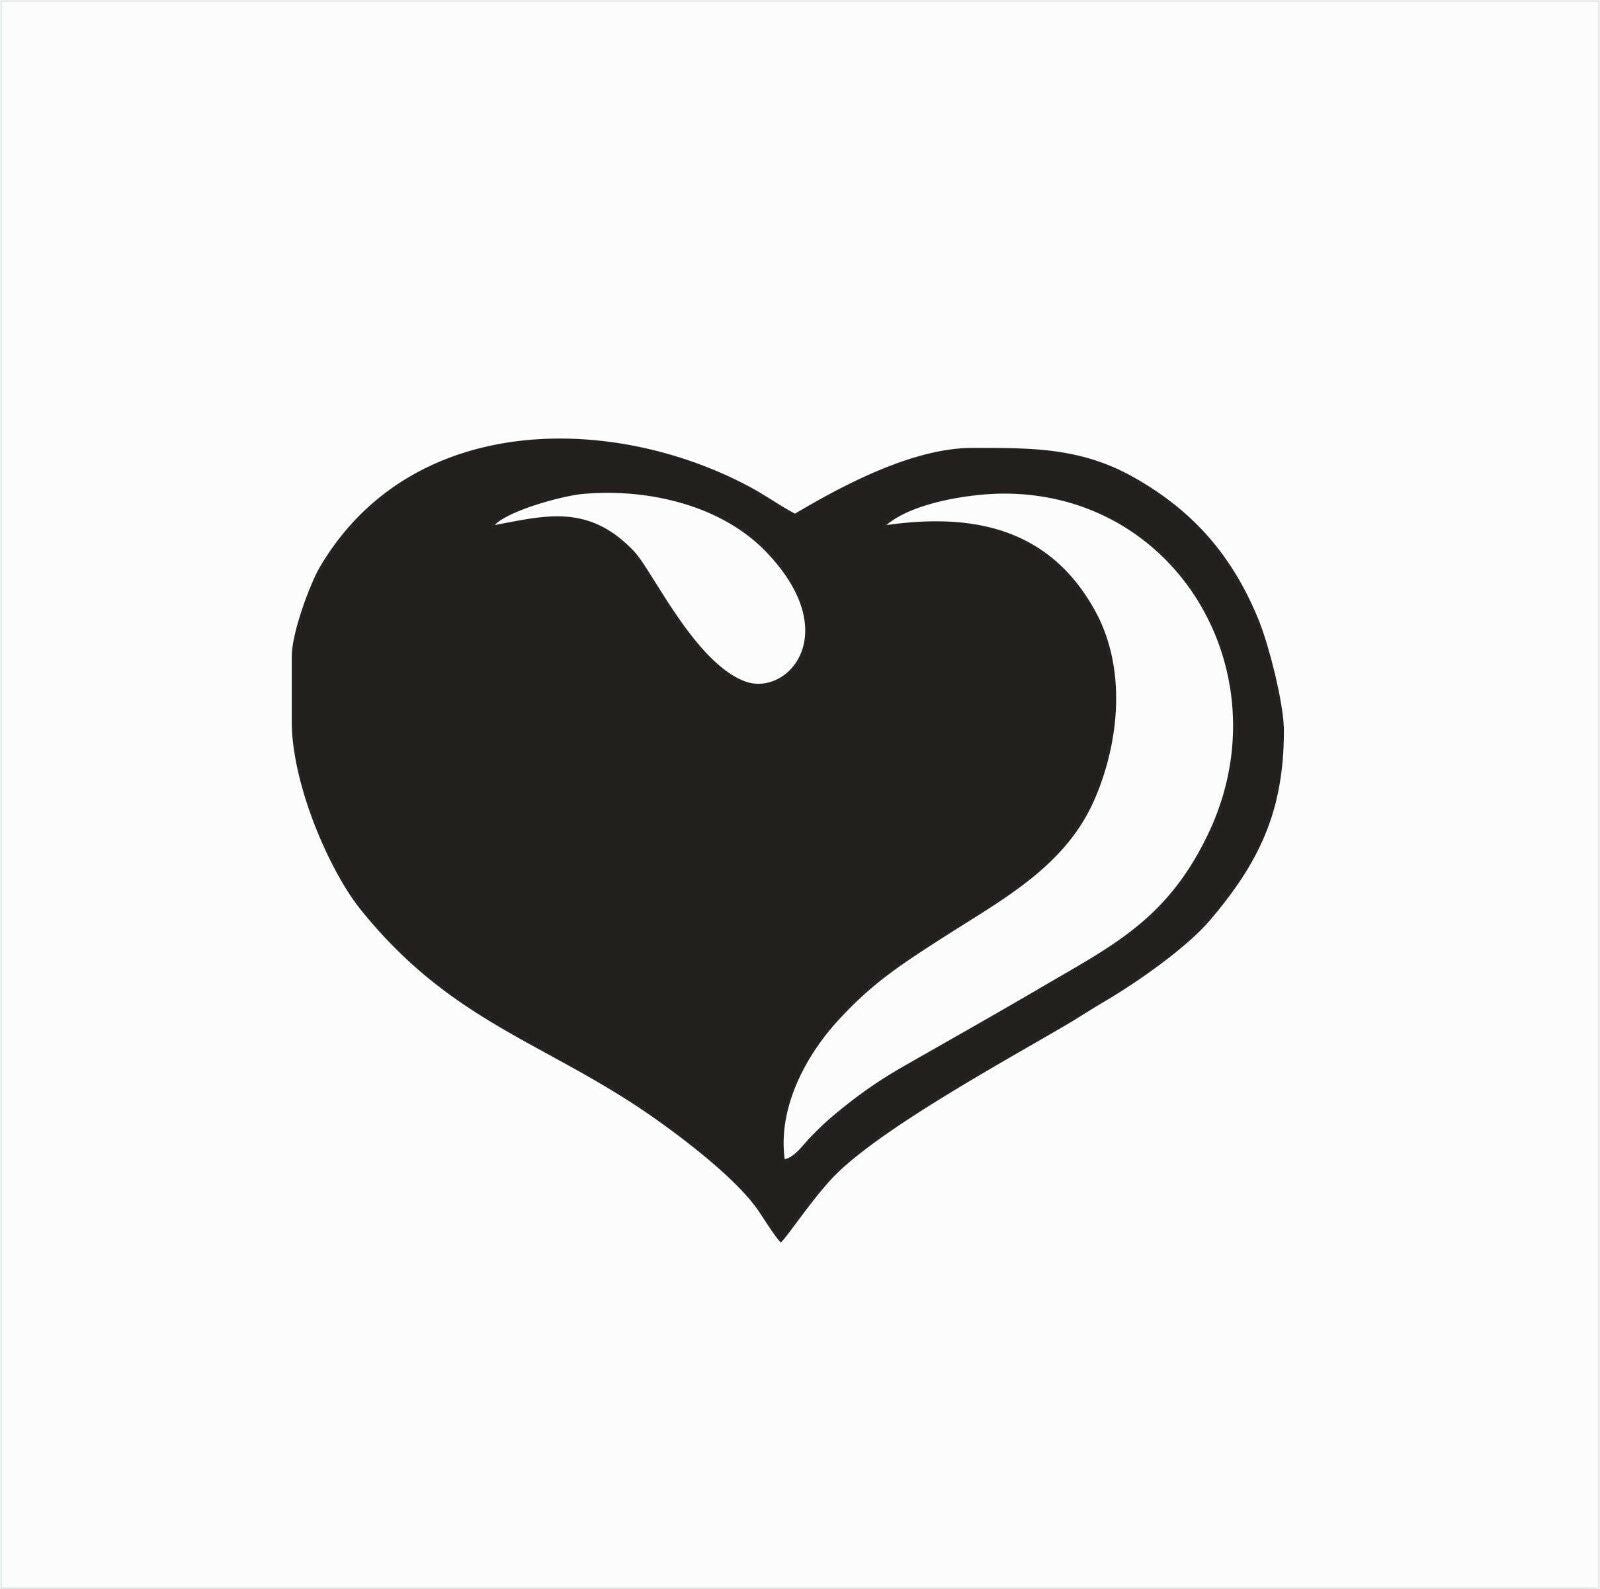 Heart Love Vinyl Die Cut Car Decal Sticker